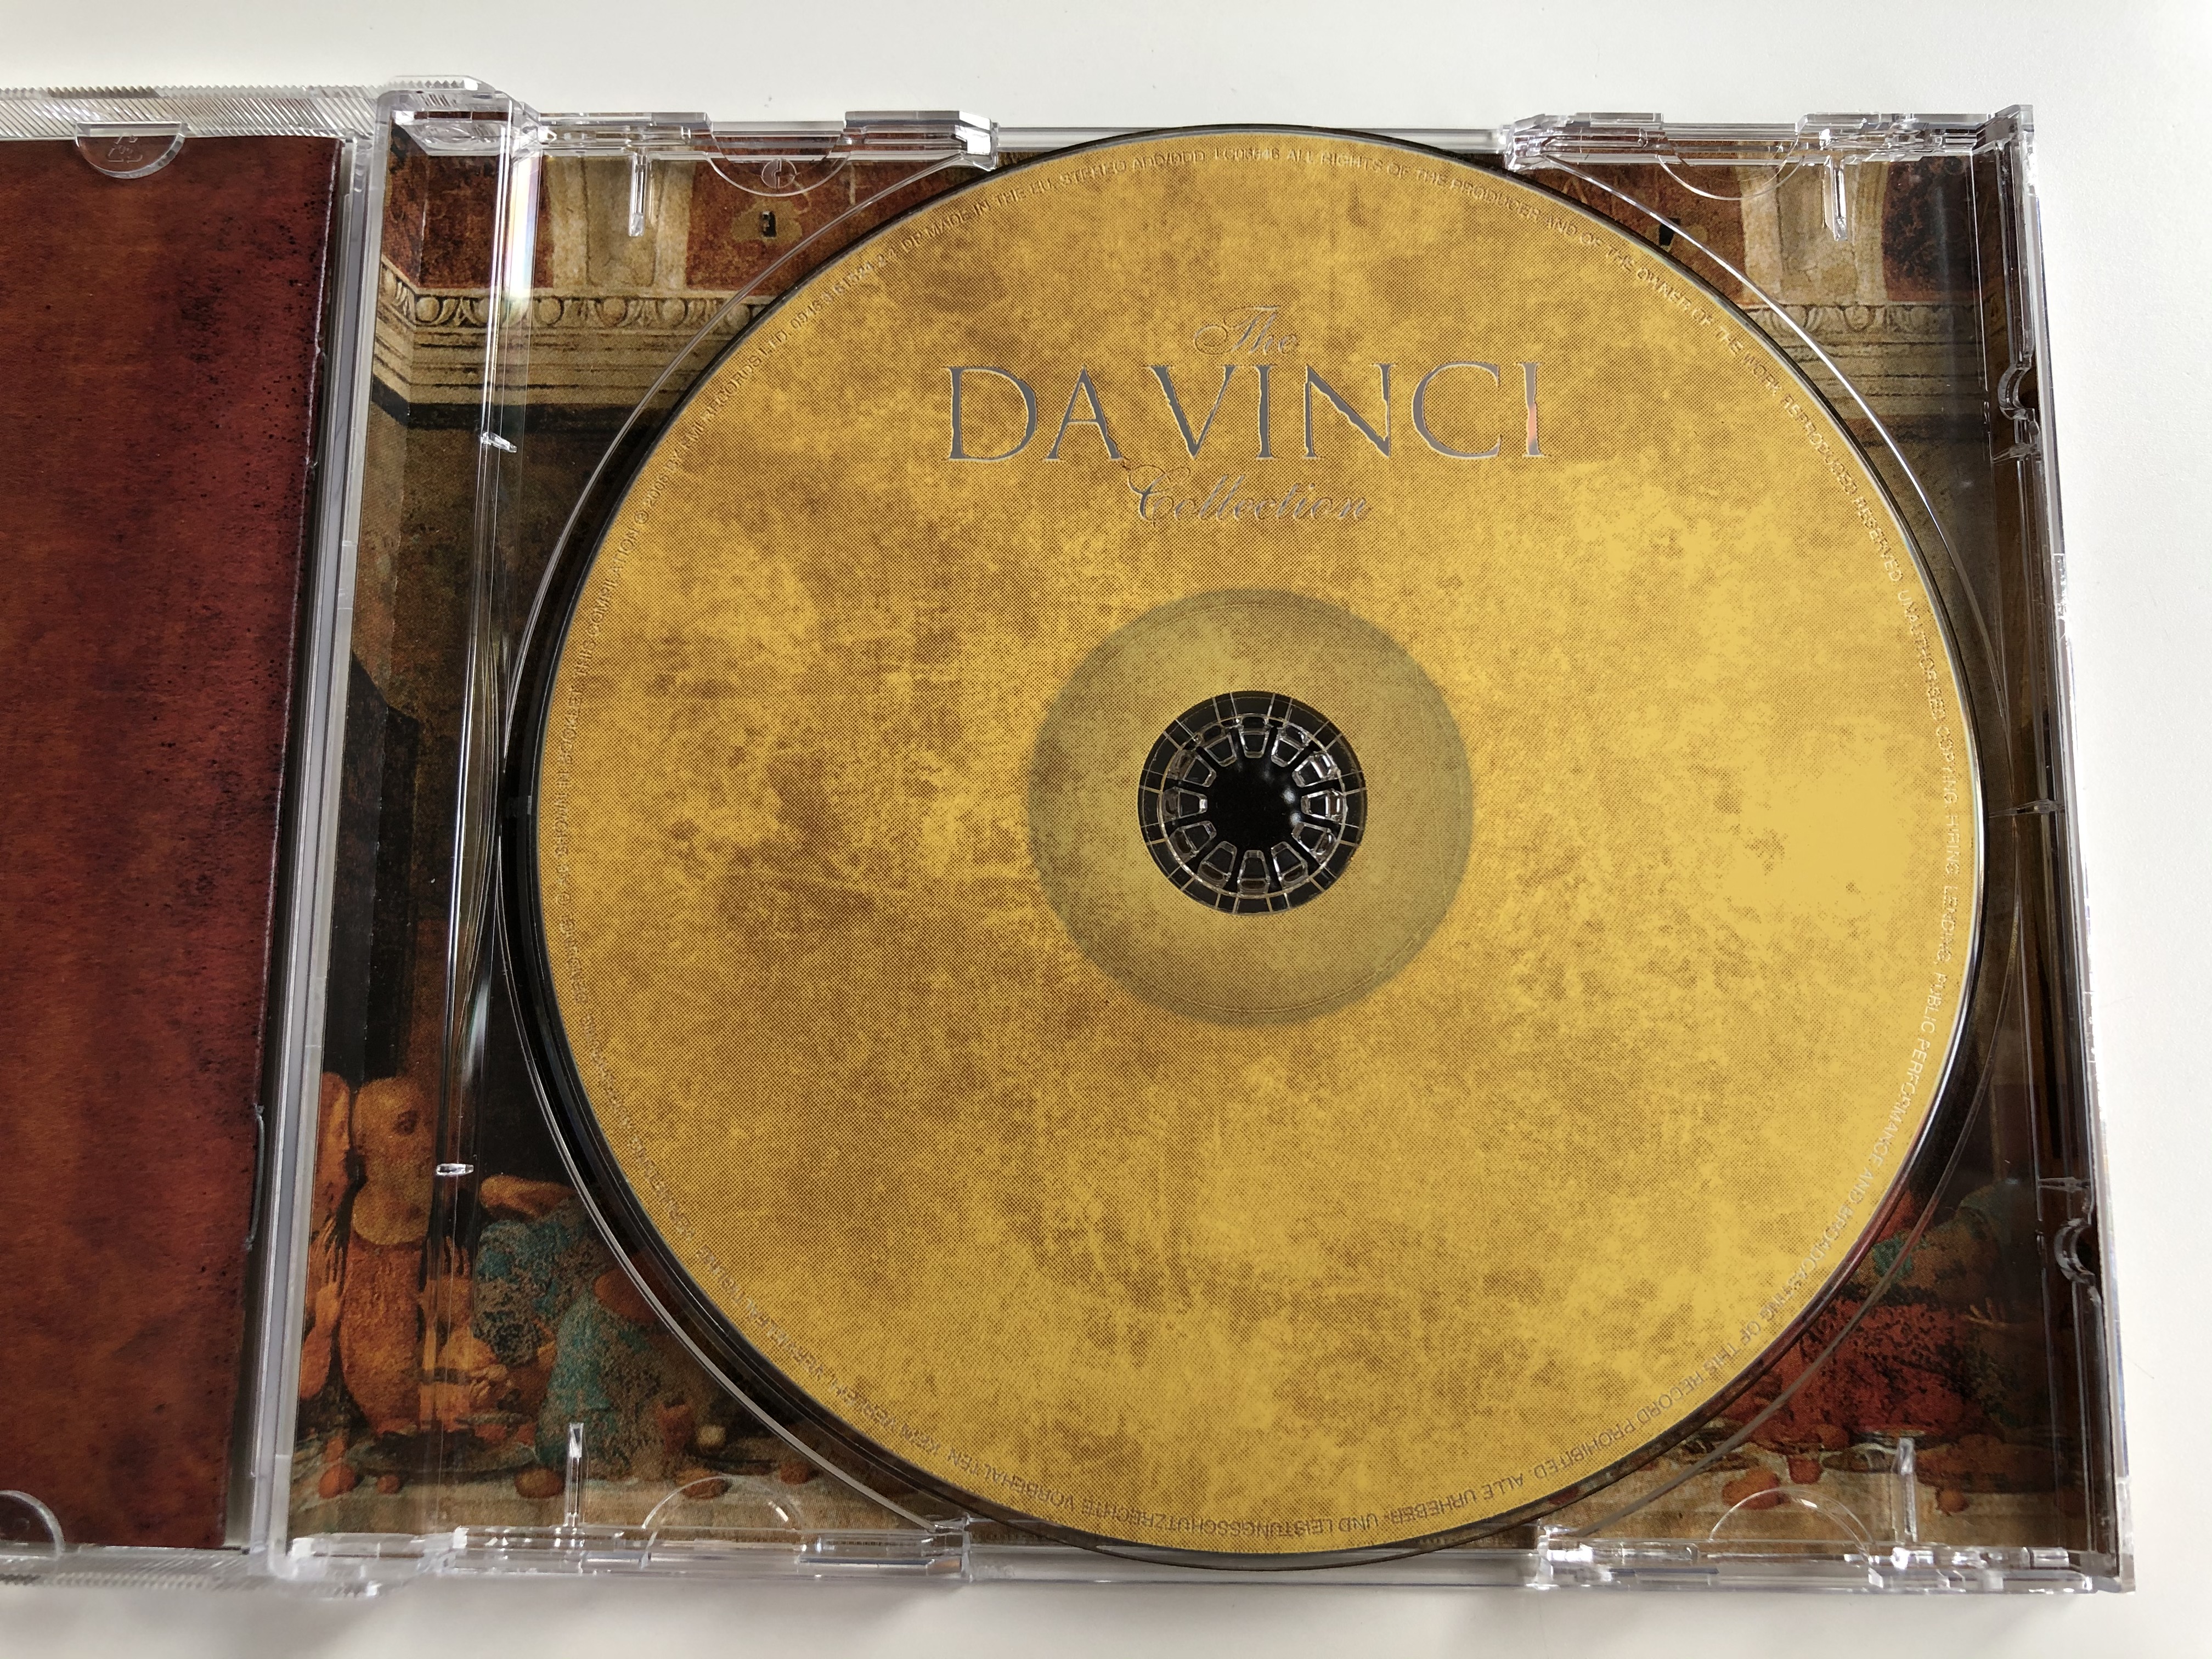 the-da-vinci-collection-emi-classics-audio-cd-2006-stereo-0946-3-61524-2-4-6-.jpg